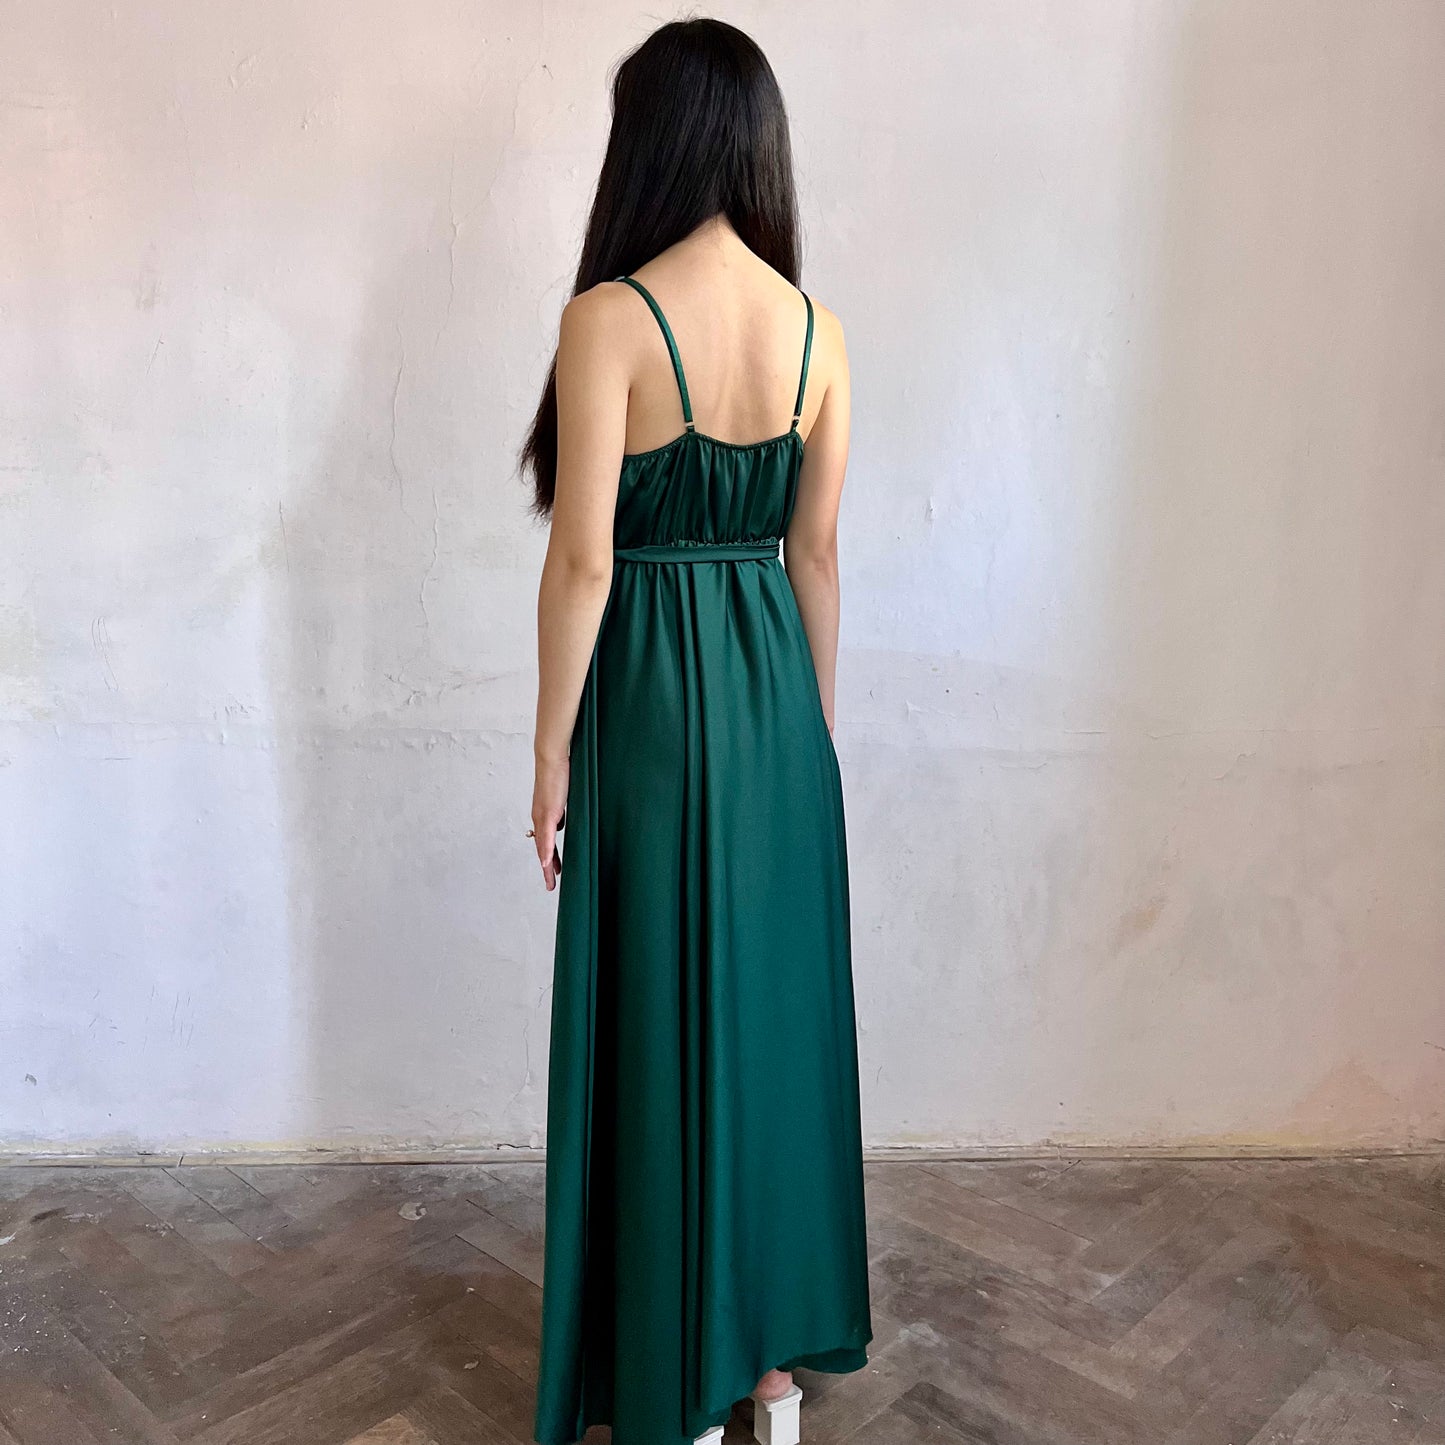 Modelka asijského původu pózující z boku oblečená v tmavě zelených společenských šatech